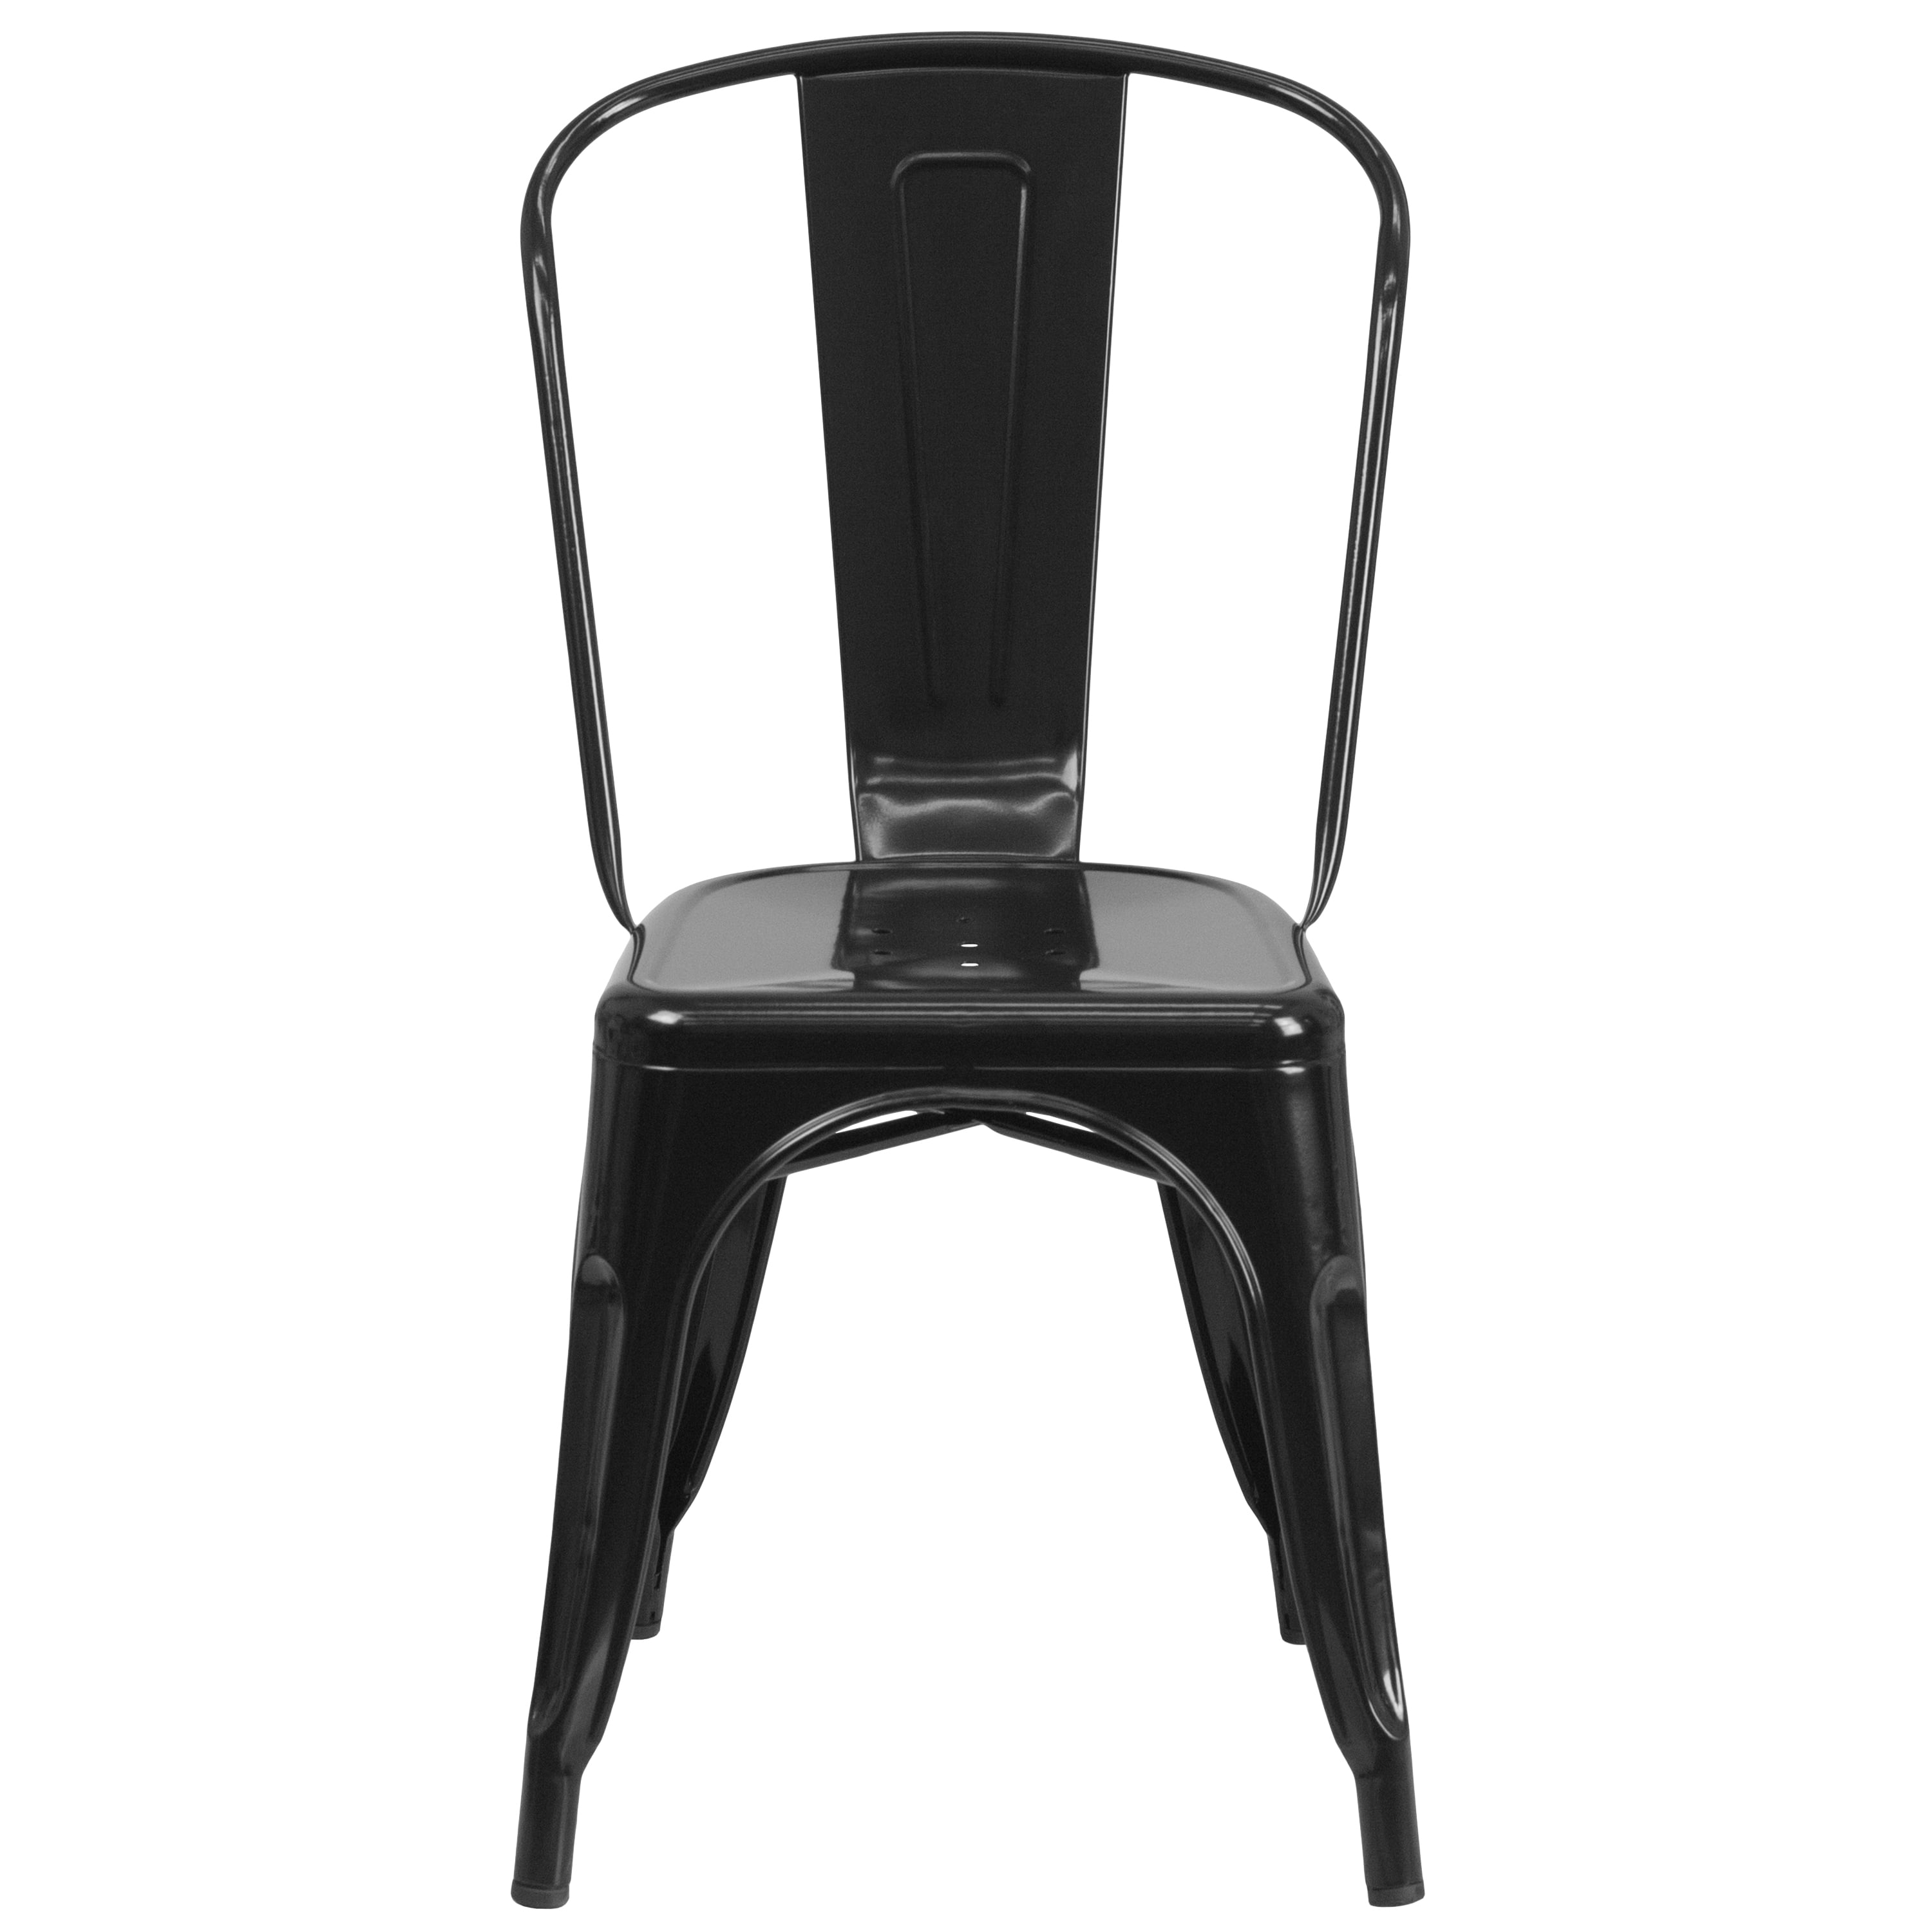 Flash Furniture 4 Pk Distressed Green Metal Indoor-Outdoor Stackable Chair